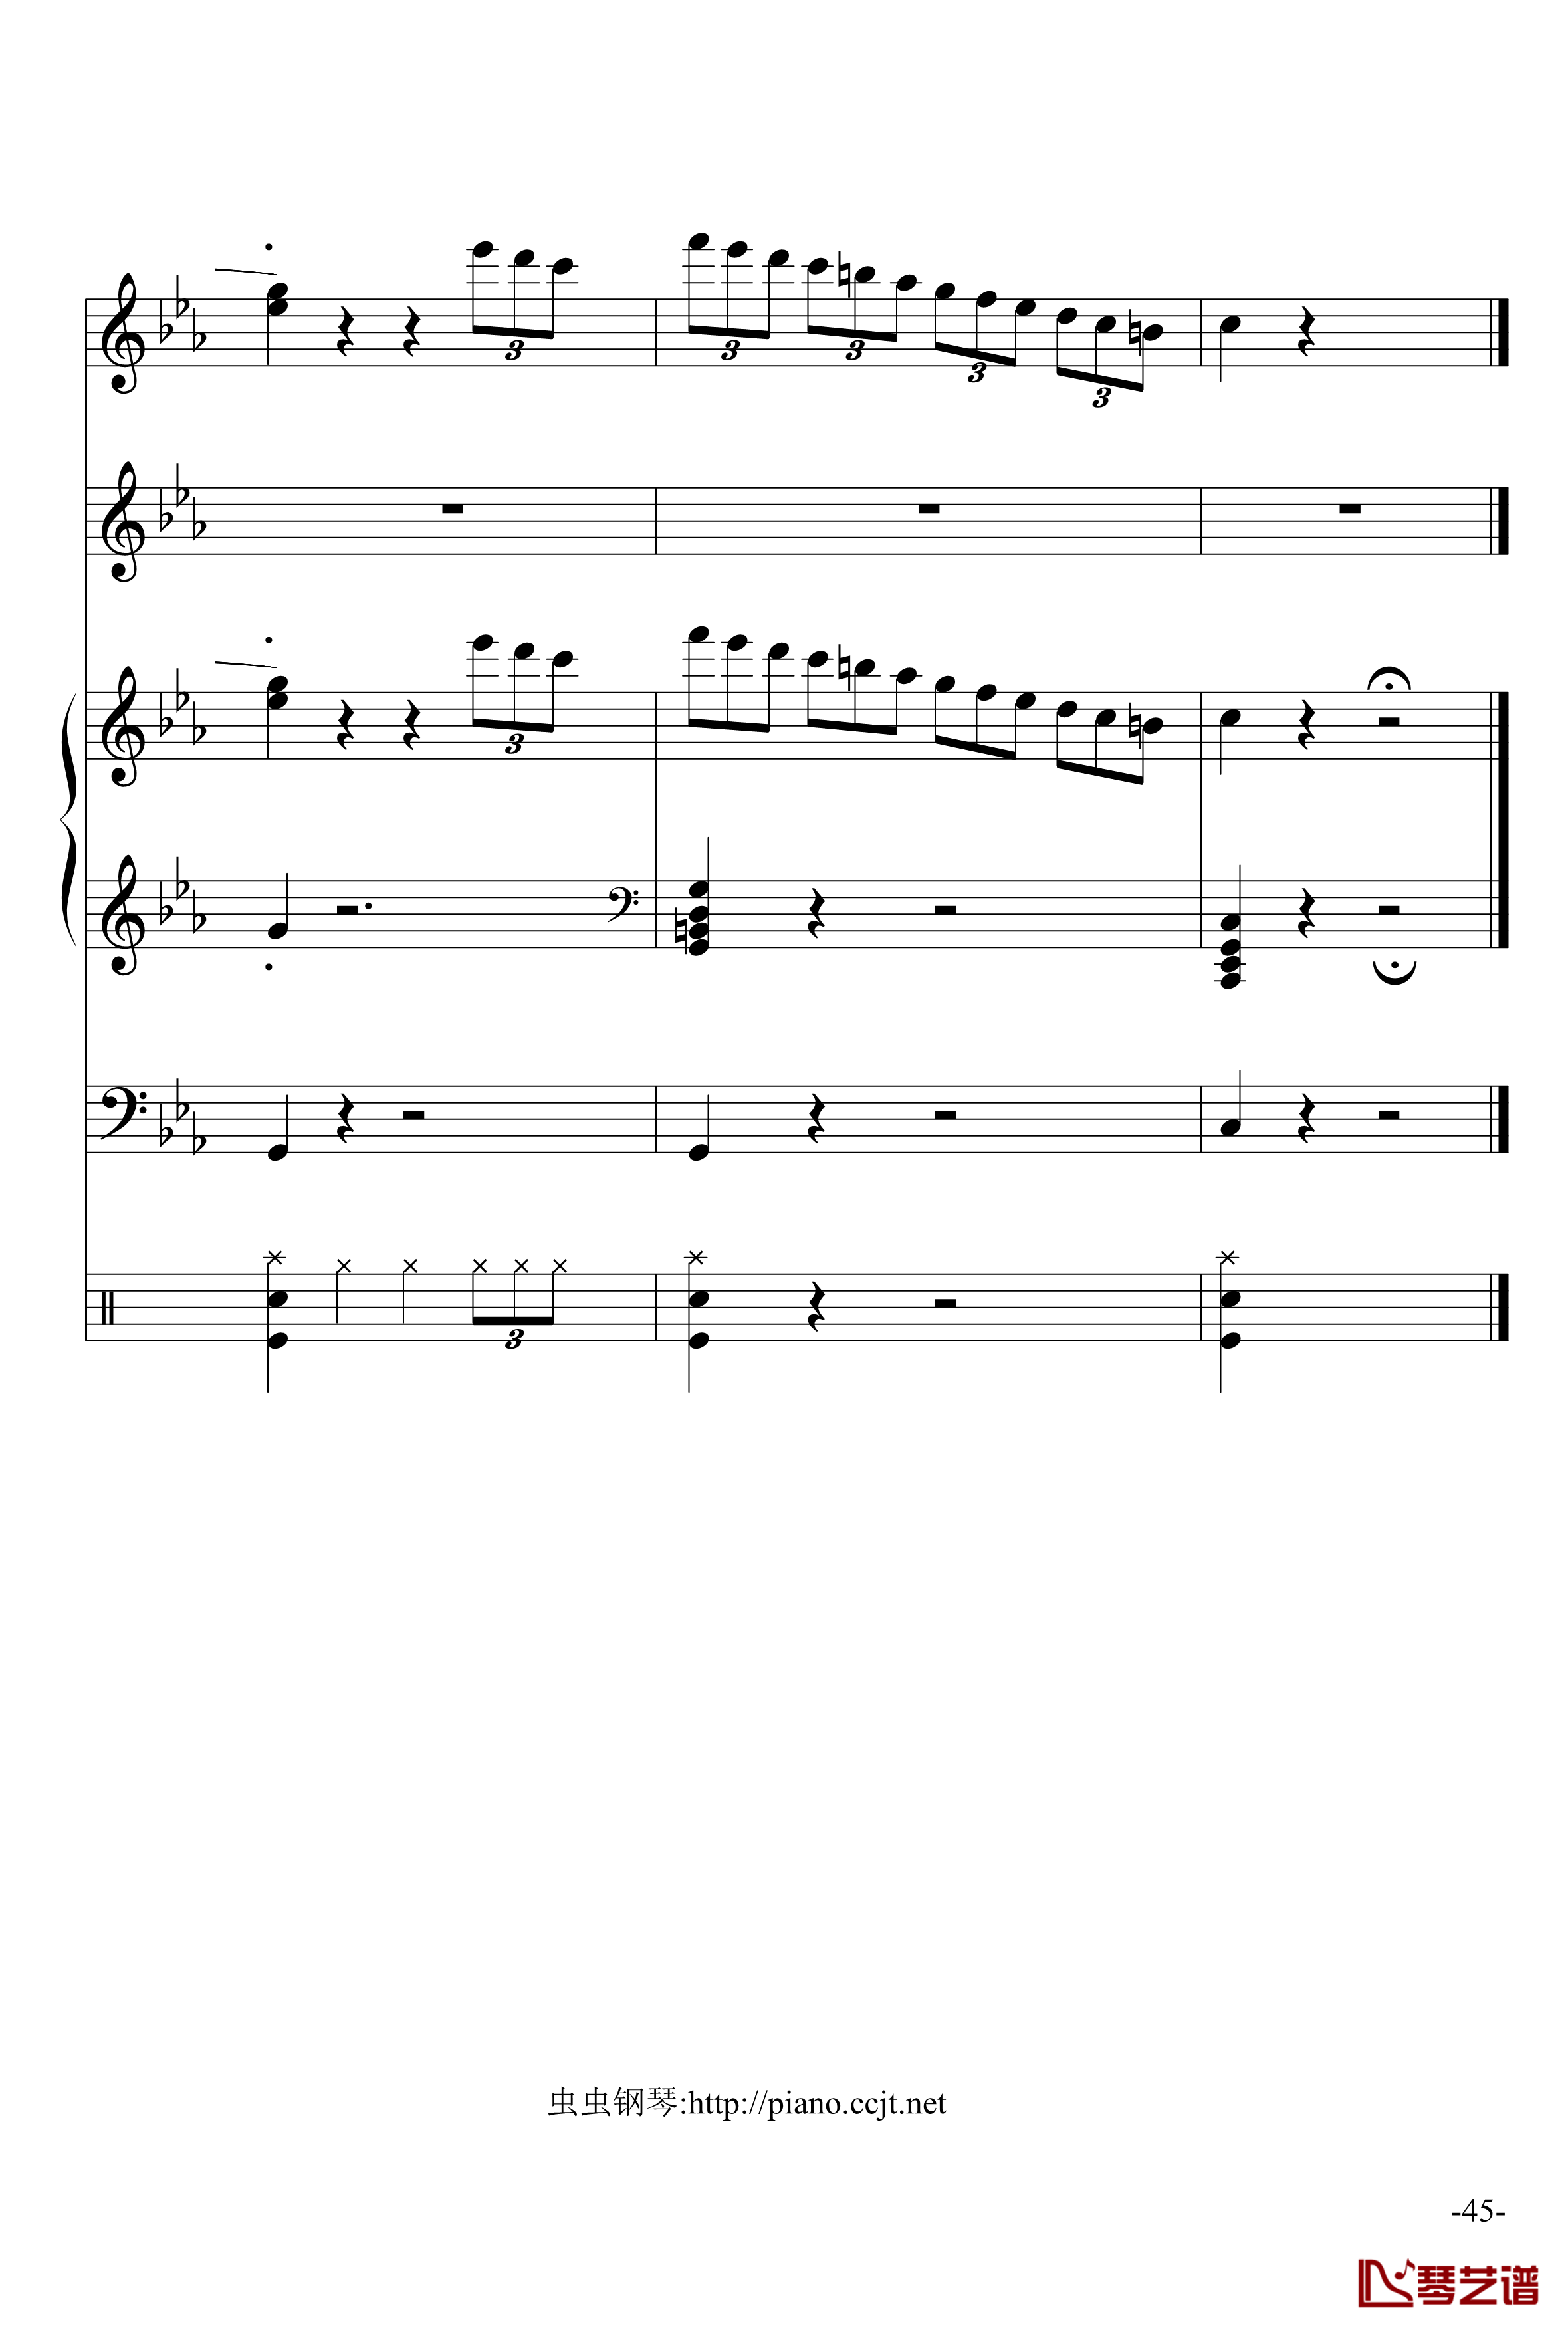 悲怆奏鸣曲钢琴谱-加小乐队-贝多芬-beethoven45